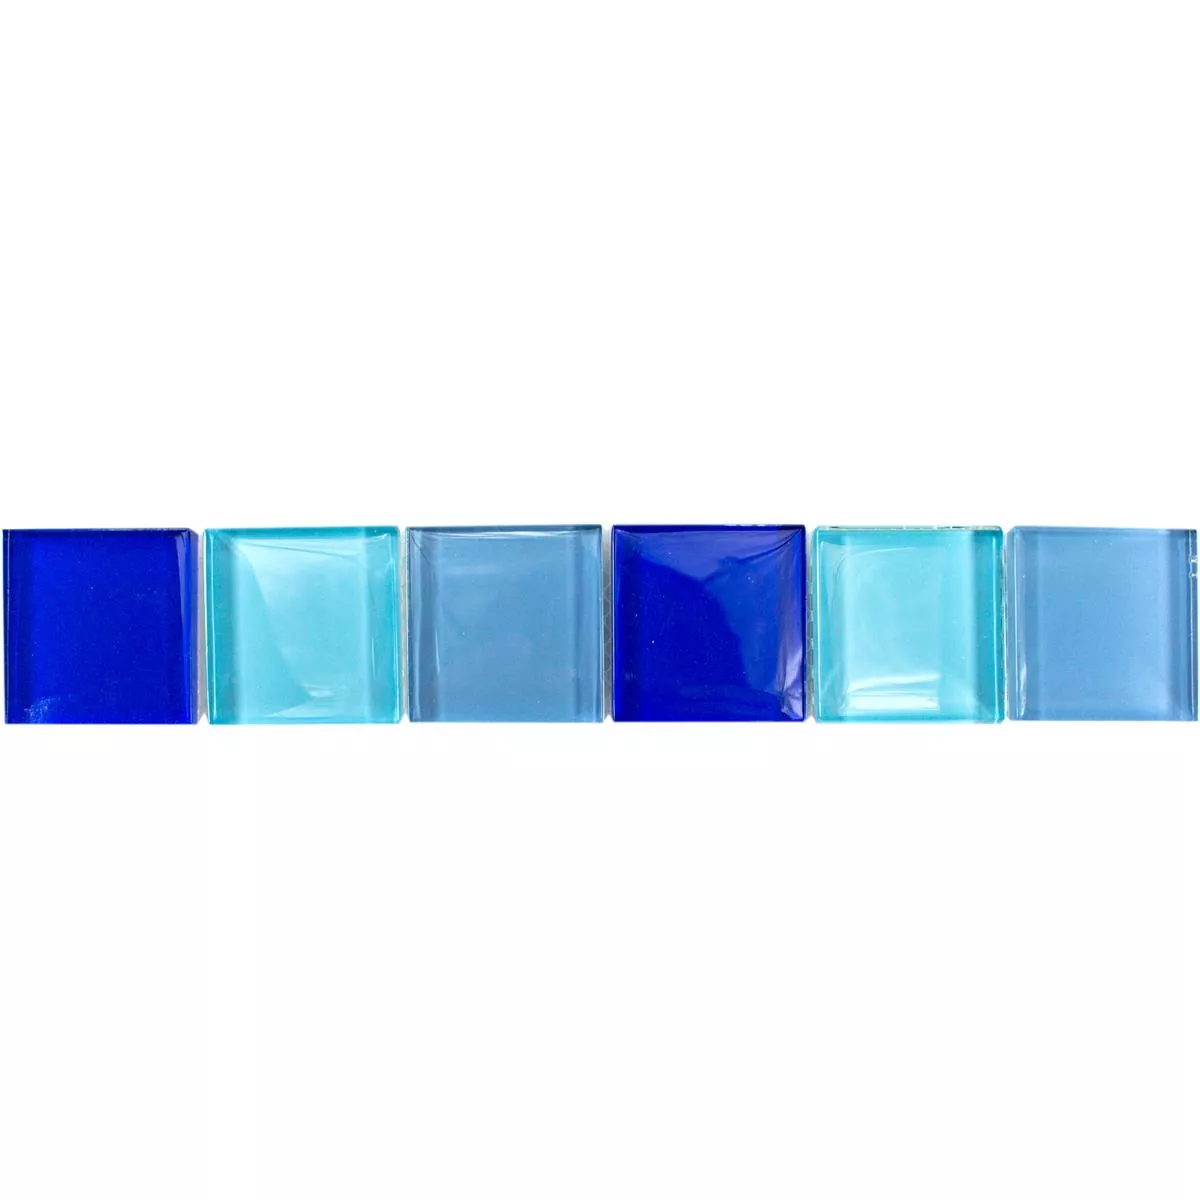 Glas Fliesen Bordüre Exira Blau Türkis